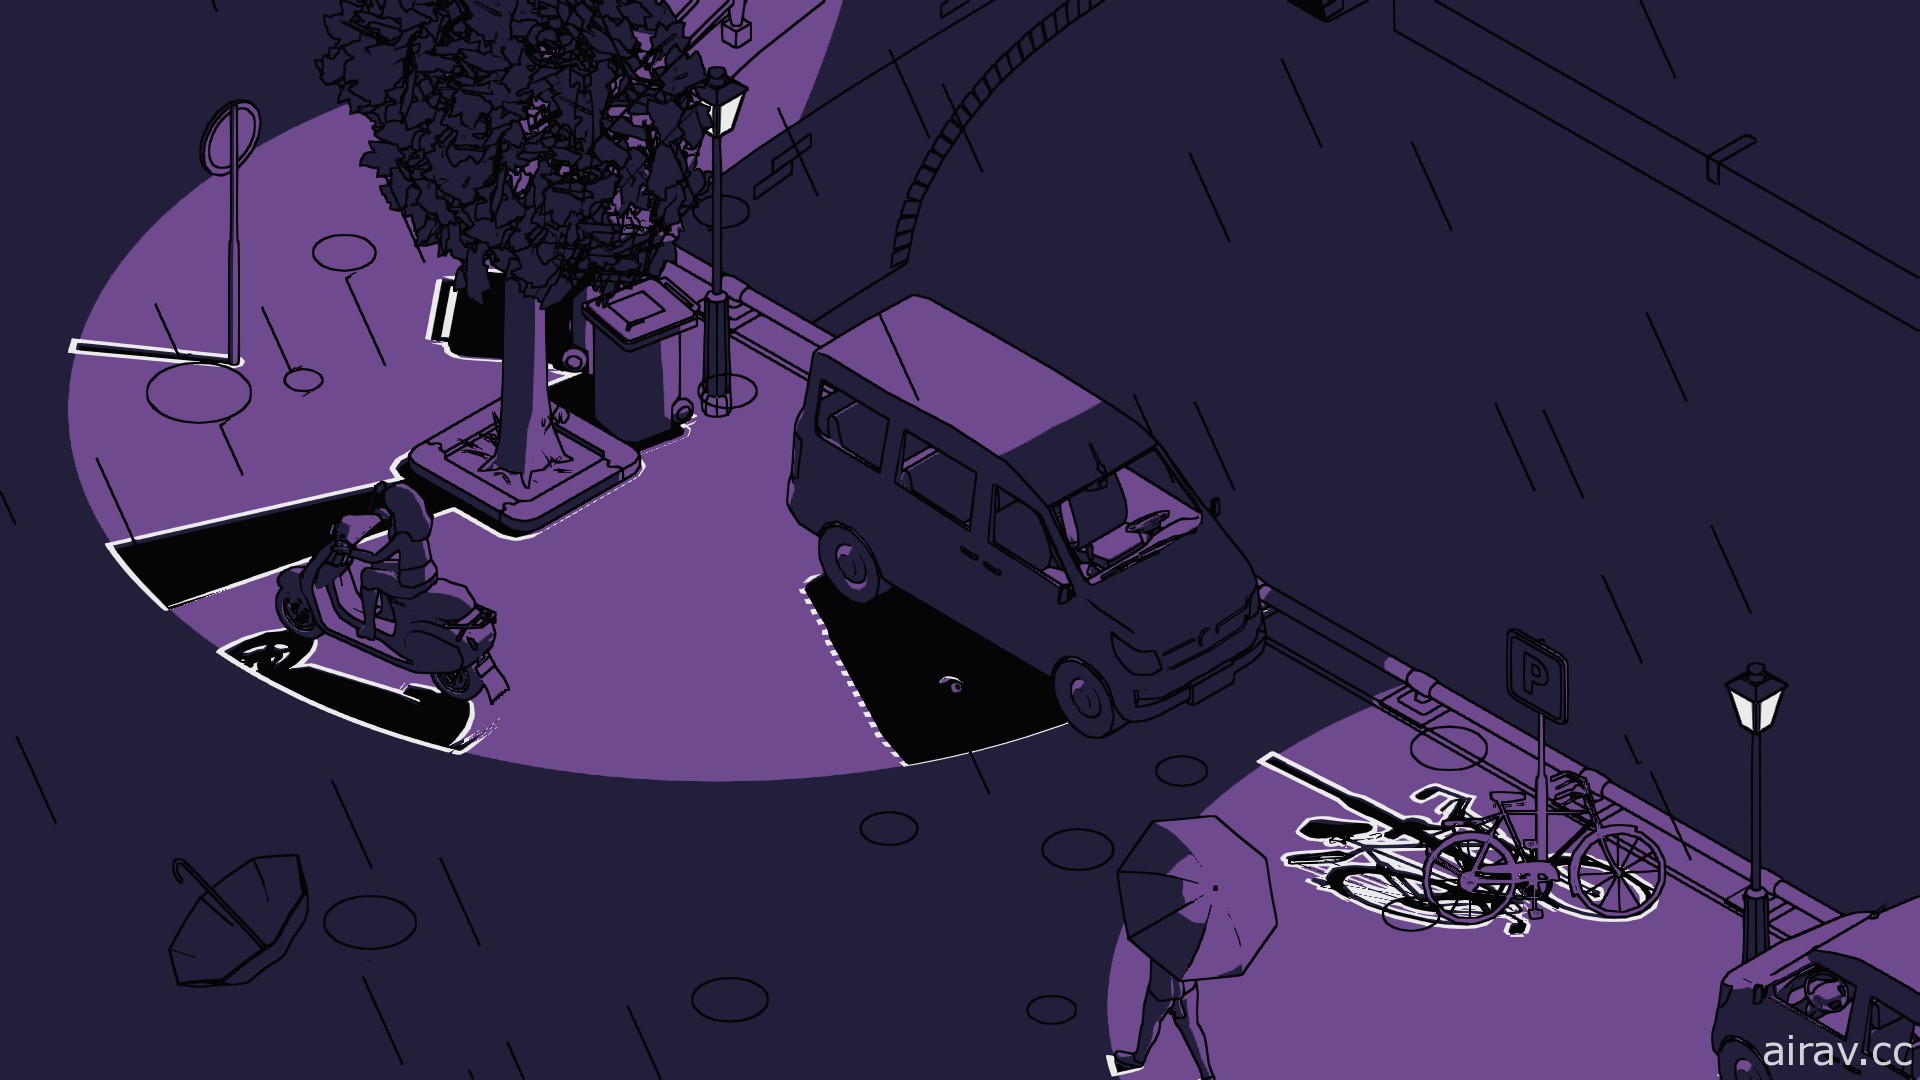 以影子为主题新作《亥灵胎》公开玩法示范影片 帮助它在影子间移动回到对应者身边